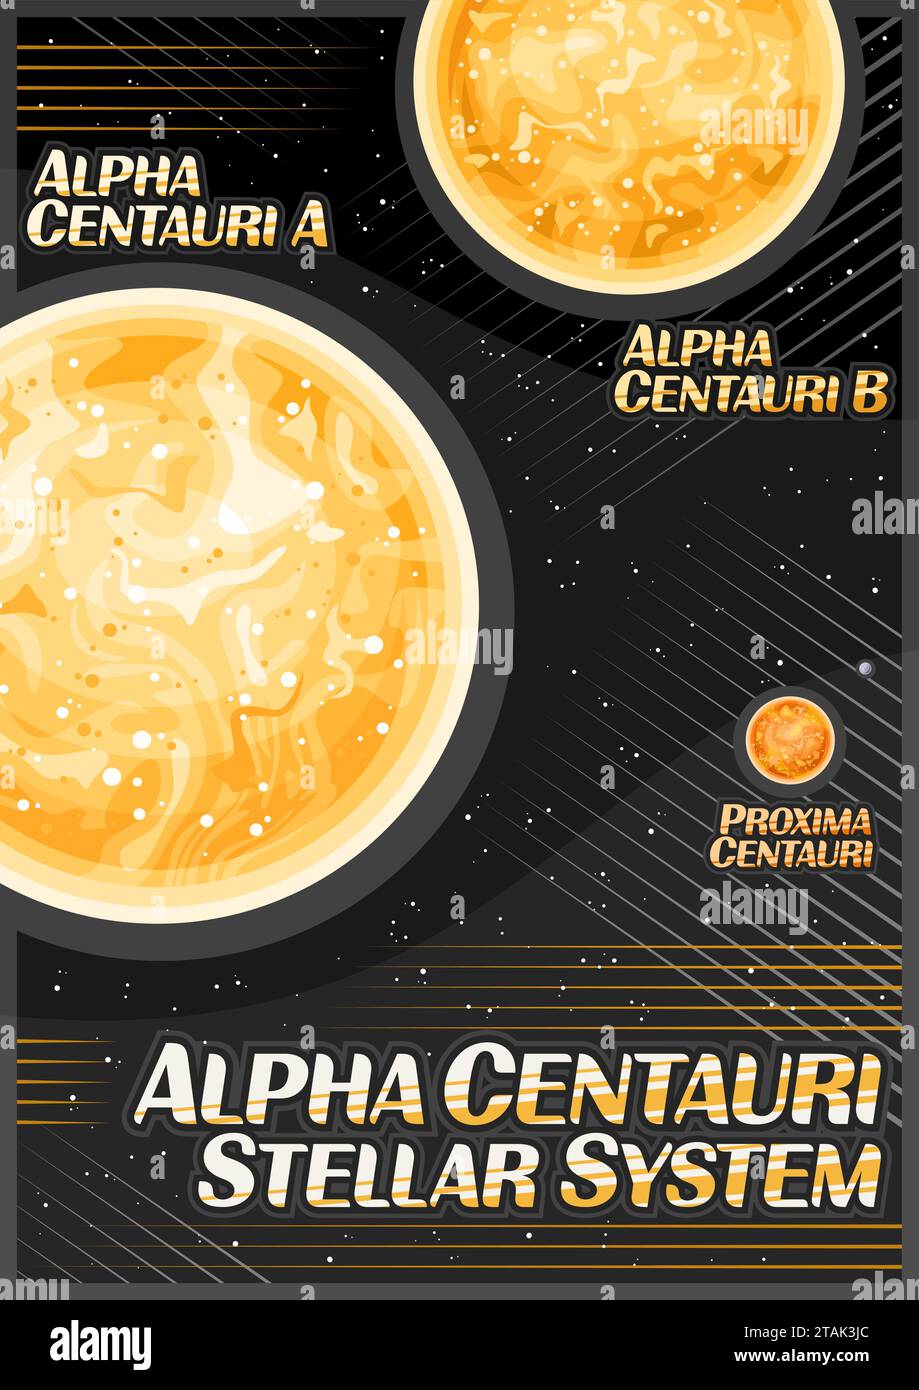 Poster vettoriale per Alpha Centauri, banner verticale con illustrazione del sistema stellare Alpha centauri a tripla stella su sfondo nero stellato, decora Illustrazione Vettoriale